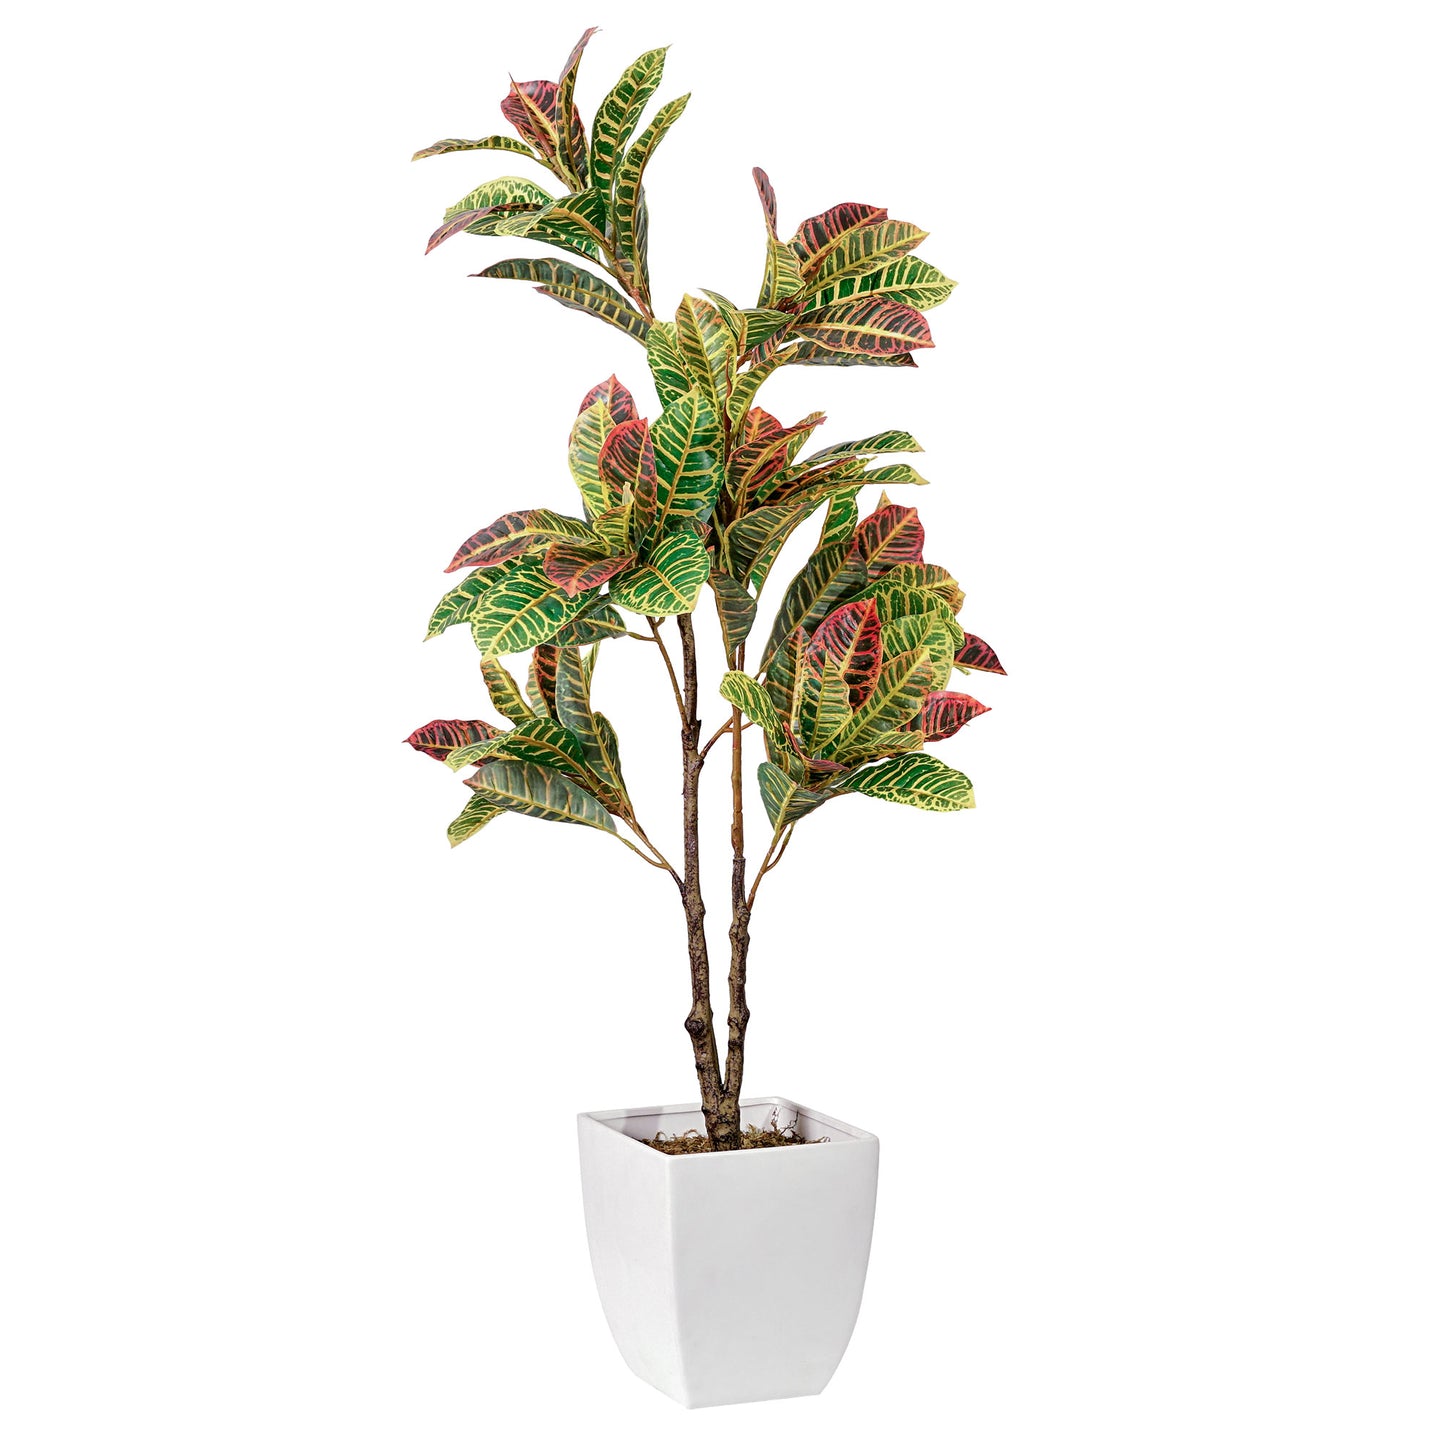 Artificial Croton Tree in White Square Ceramic Pot - 48" - Botanica Home ™